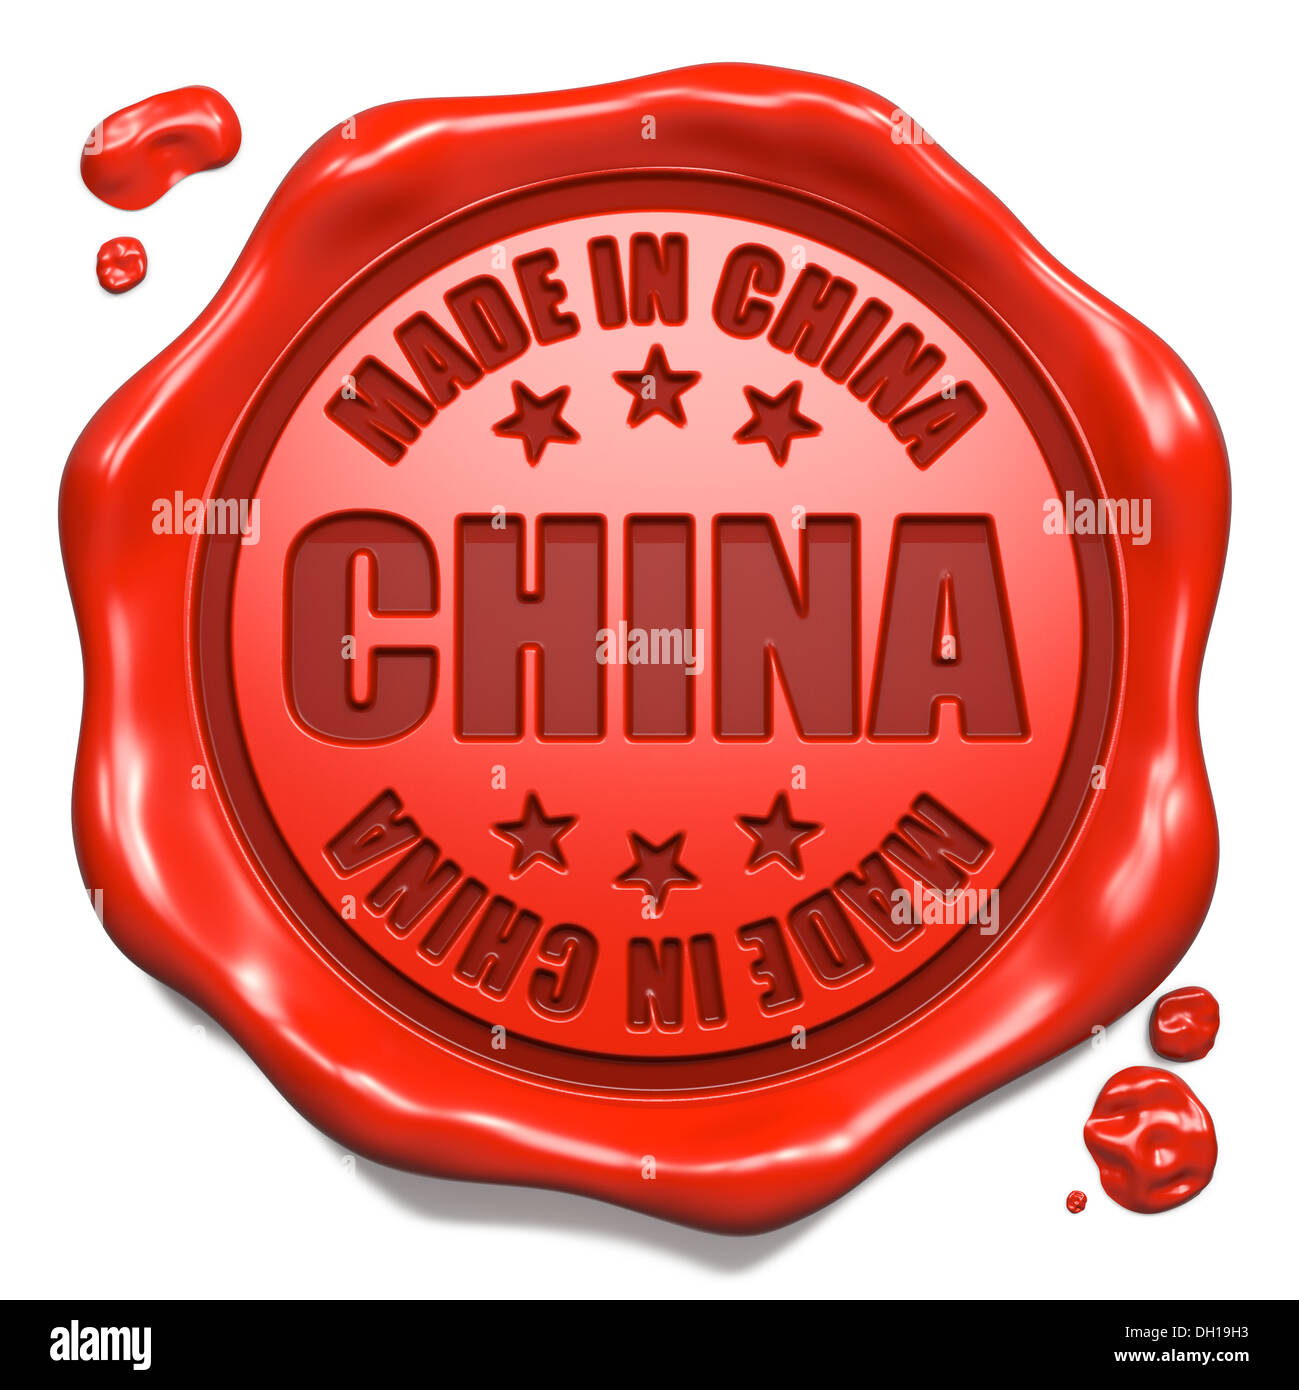 Fabbricato in Cina - Timbro sul sigillo di cera rossa. Foto Stock